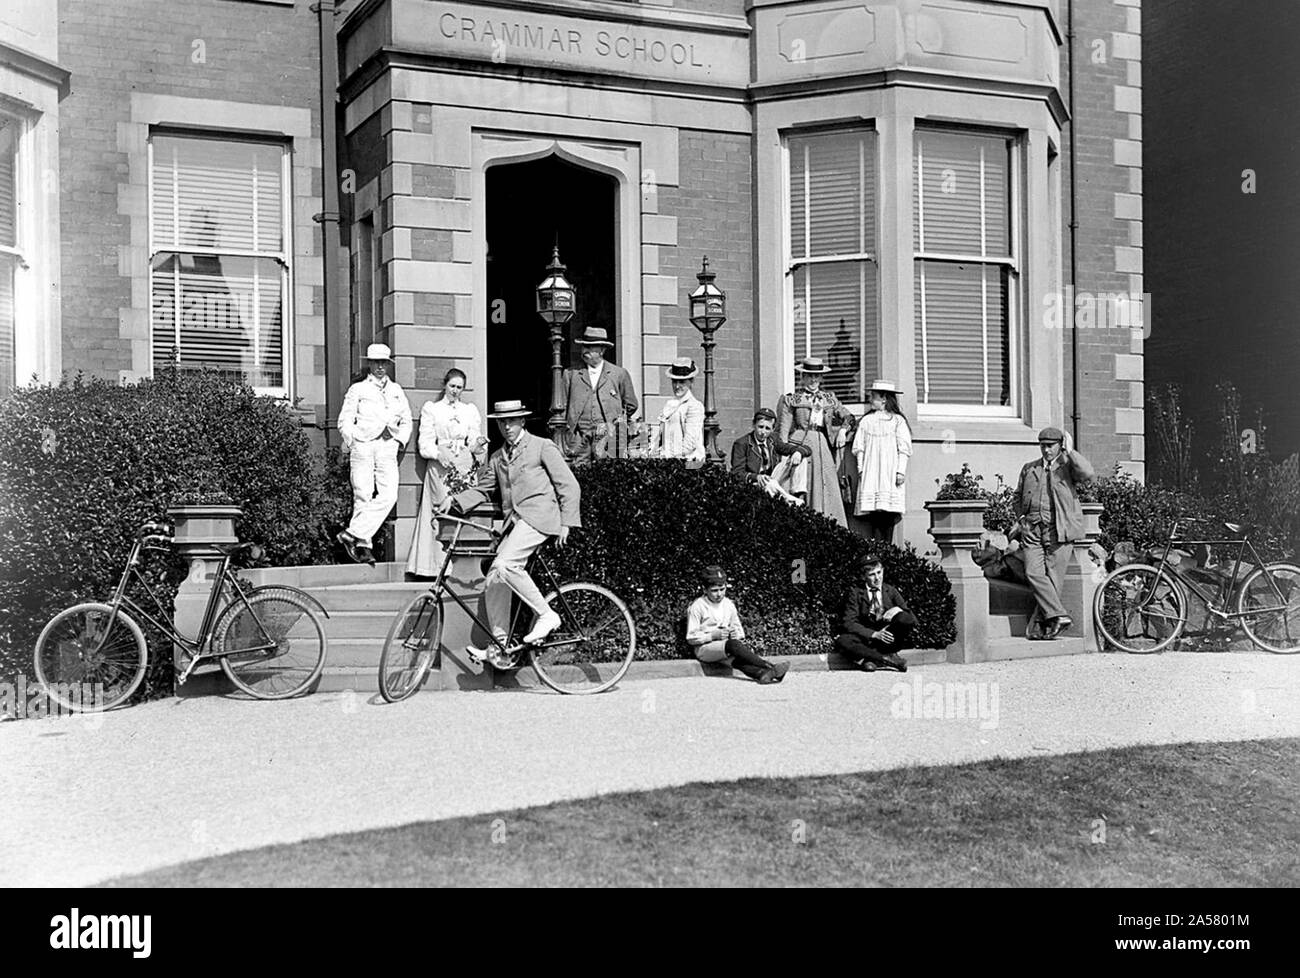 Worcester Grammar School 1904 Stock Photo